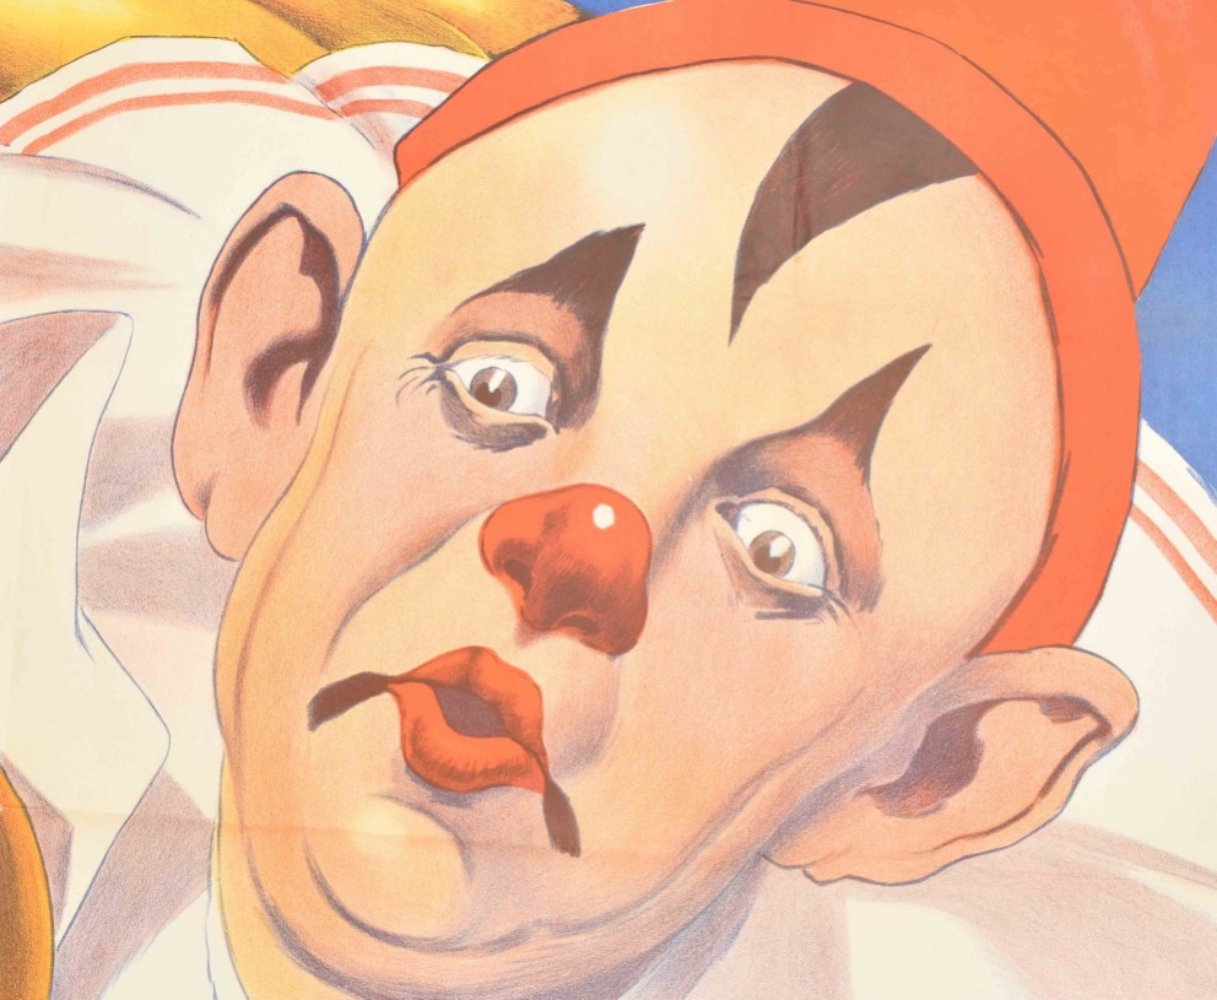 [Clowns] Circus Busch. Gross Wanderschau Friedländer, Hamburg, 1926 - Image 4 of 6